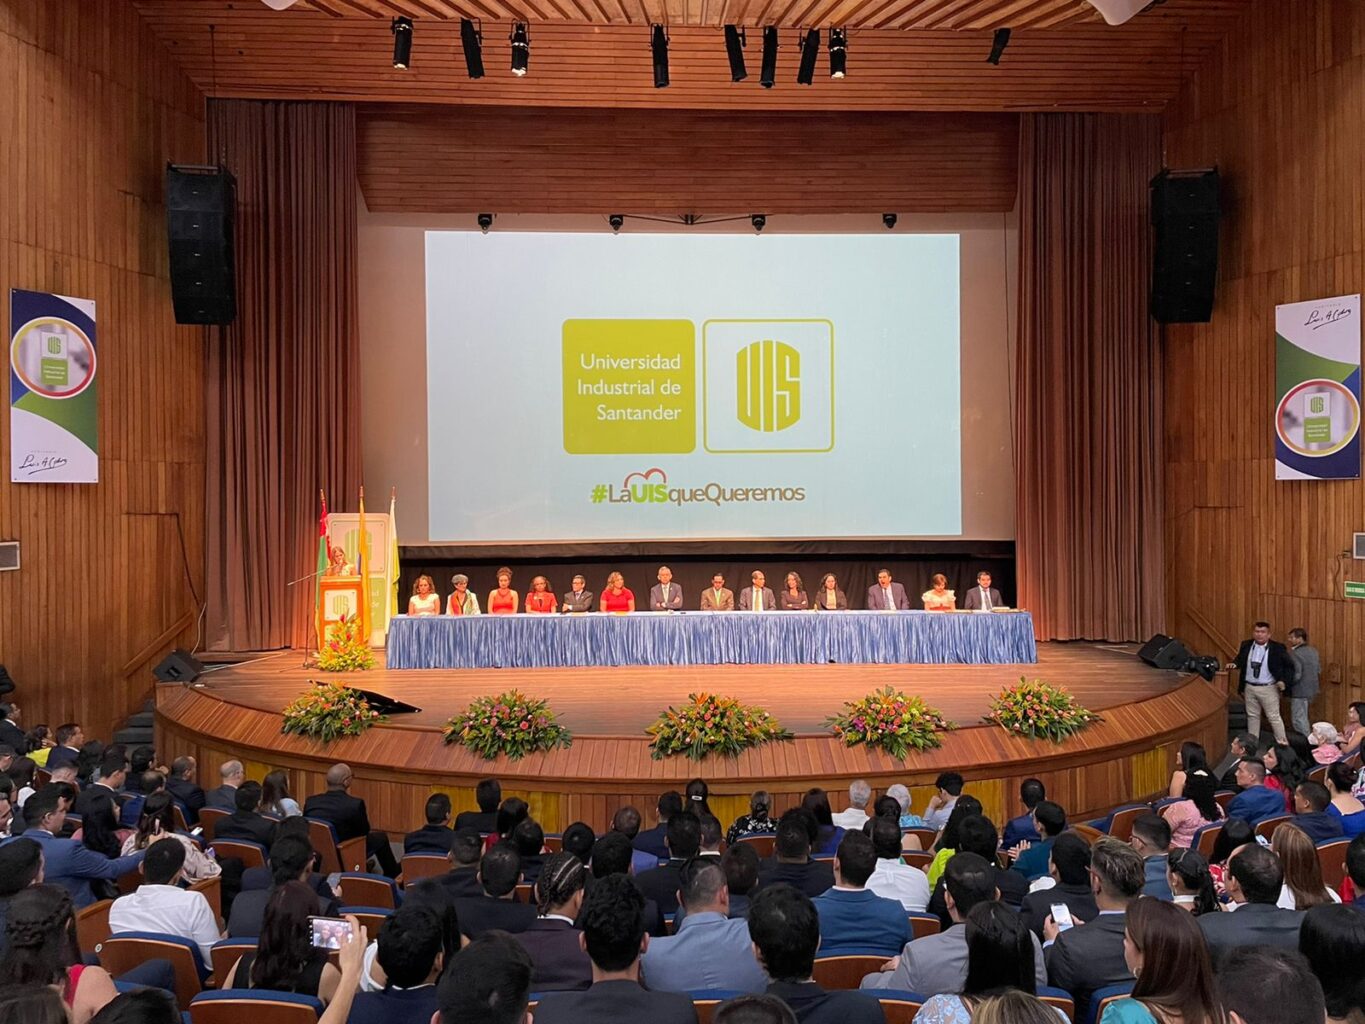 Imagen muestra al Consejo Académico de la Universidad Industrial de Santander, presidido por el rector Hernán Porras, durante la ceremonia de grados correspondientes a octubre de 2022. 